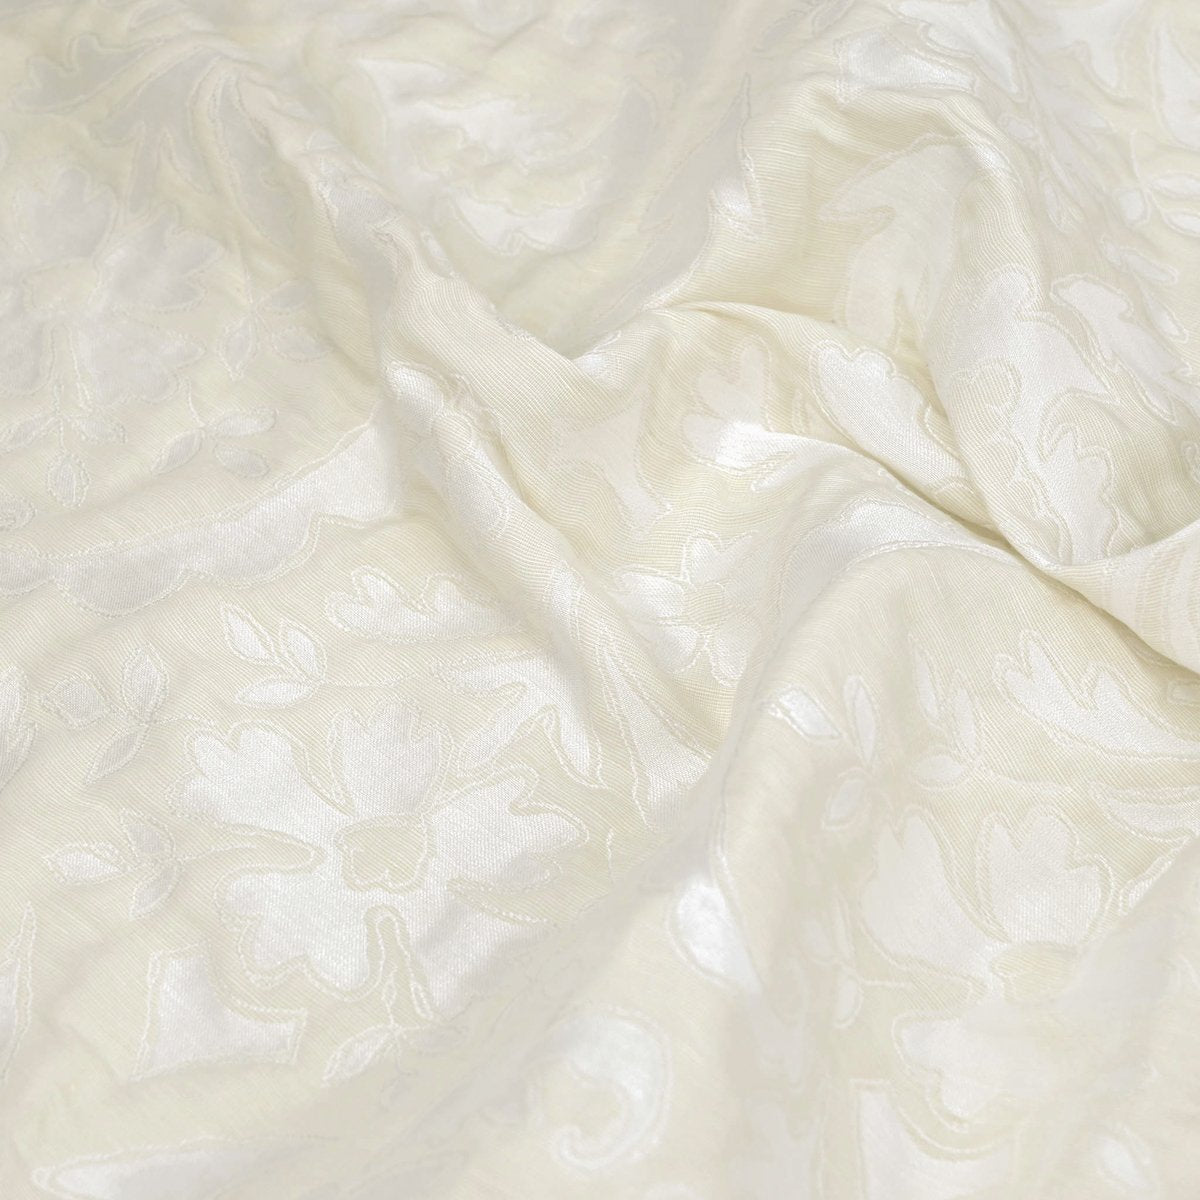 Cream Floral Jacquard Fabric 97605